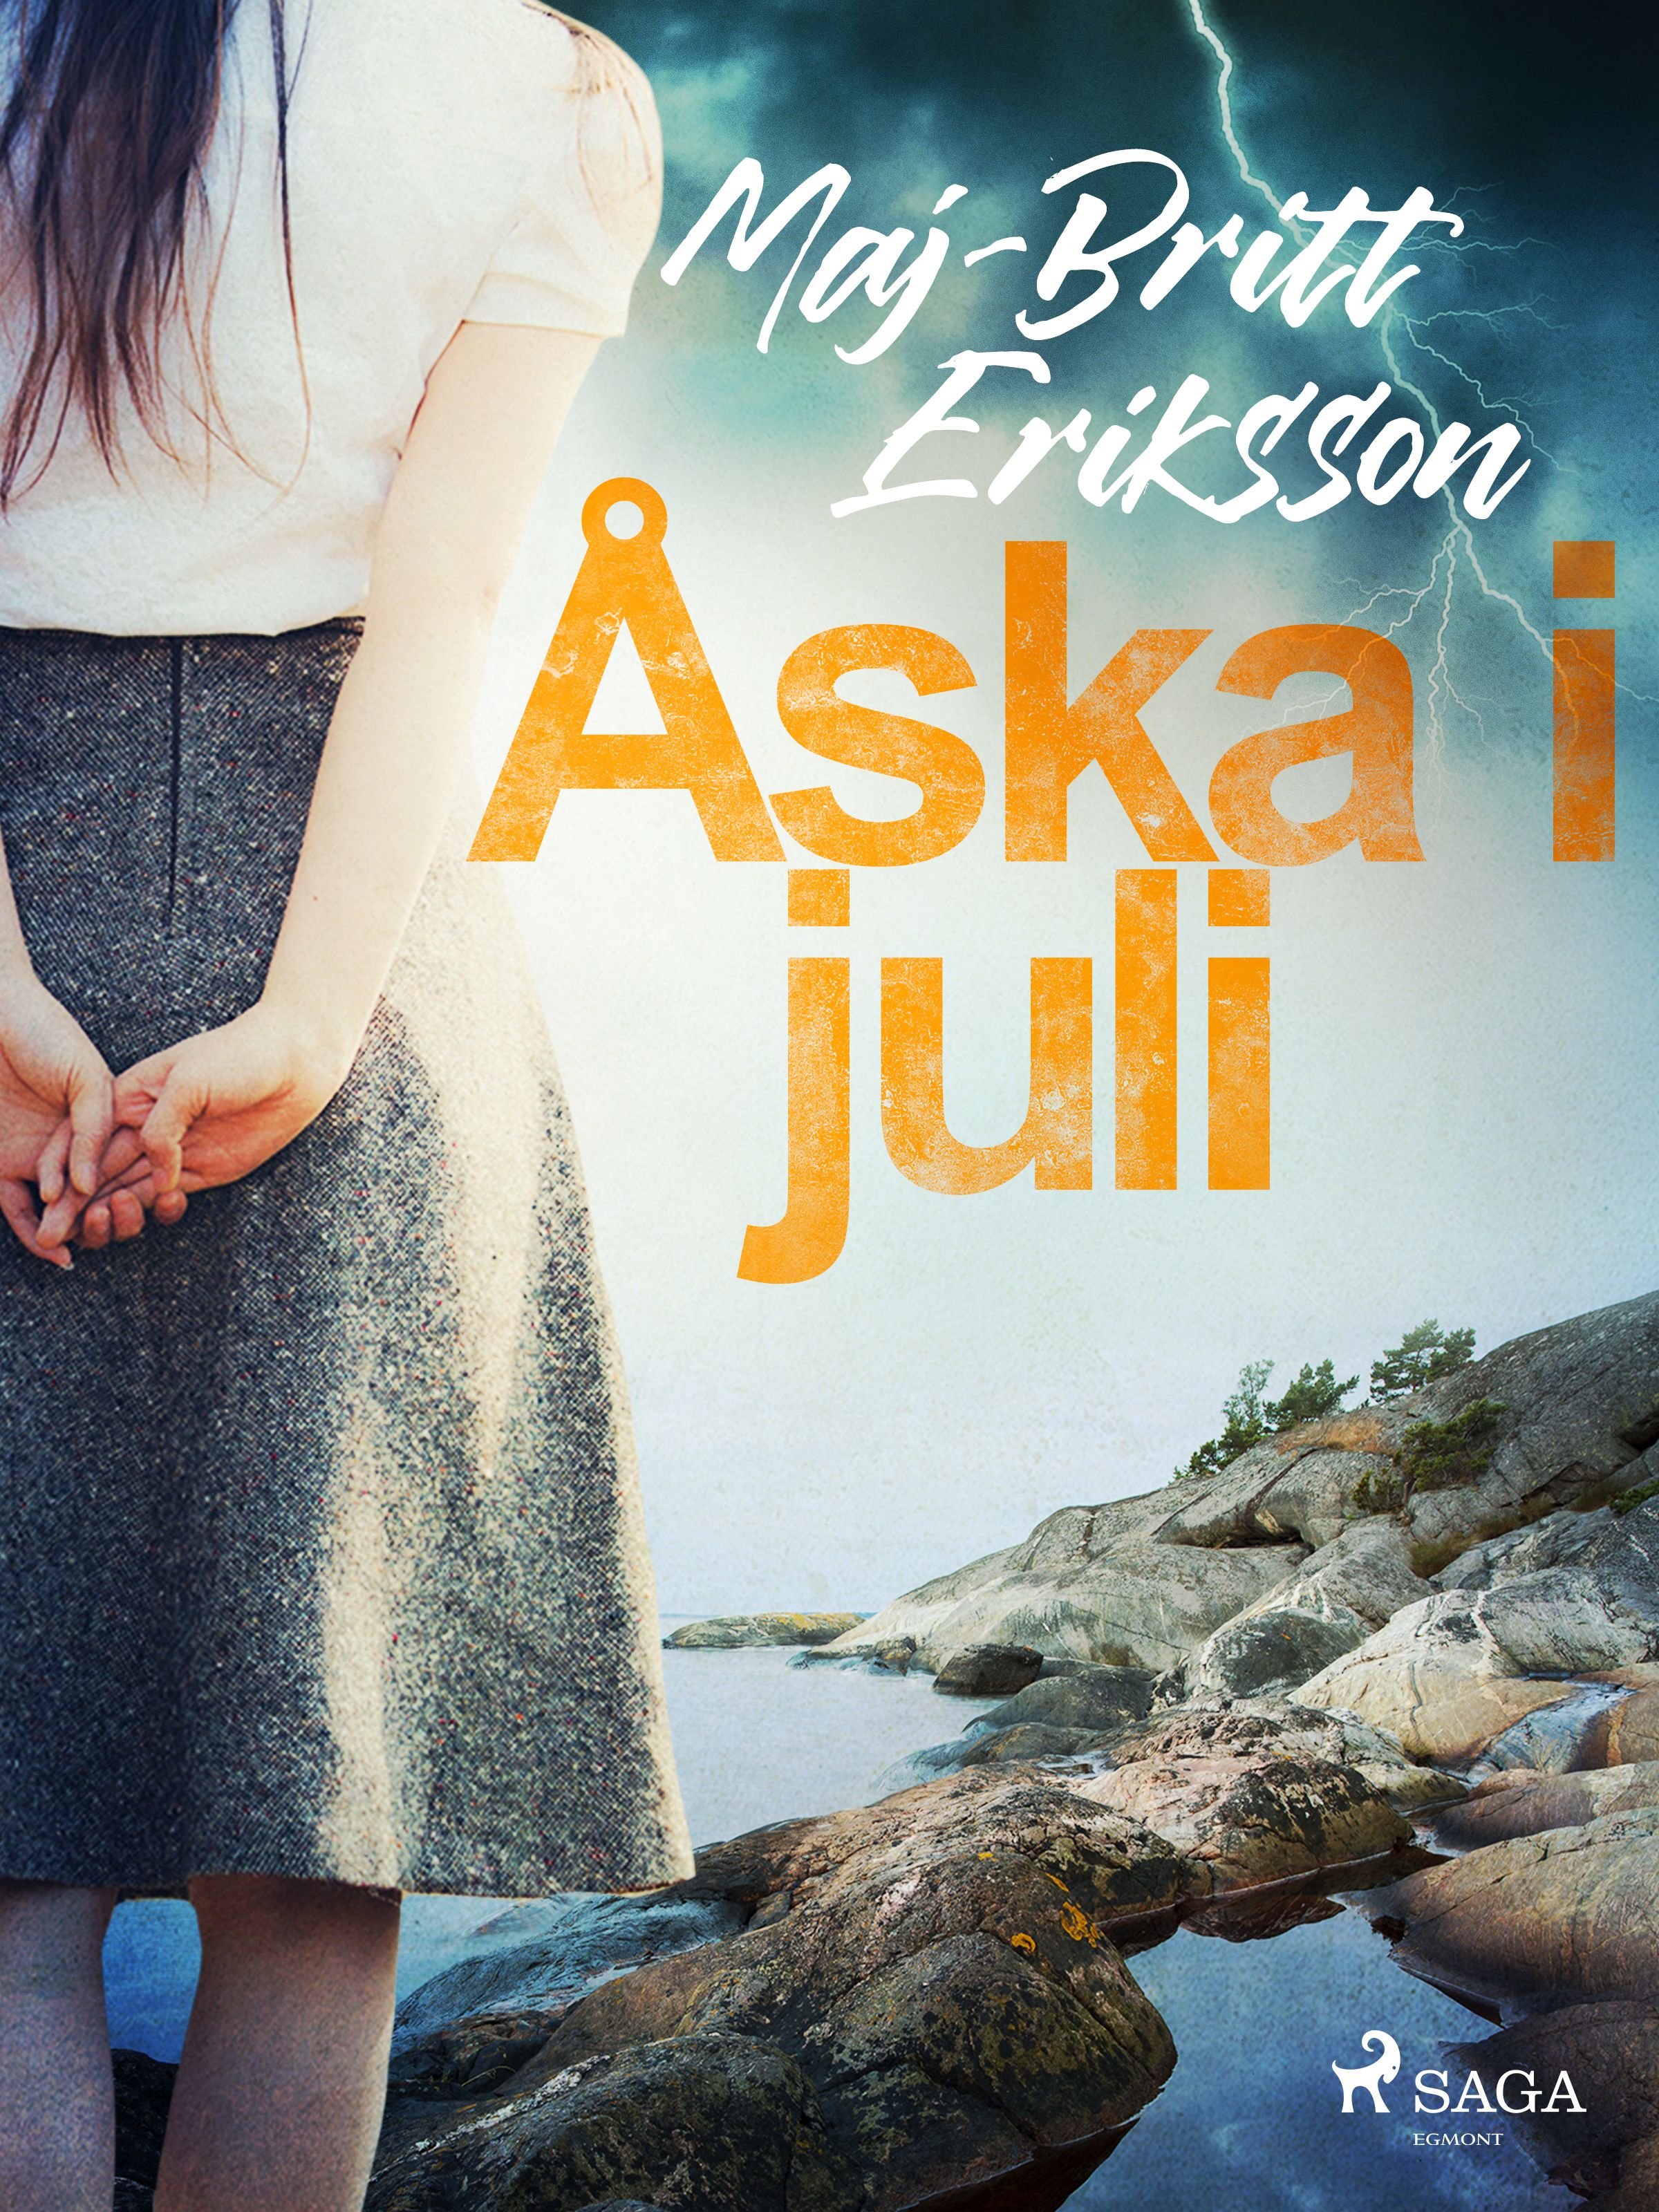 Åska i juli, e-bog af Maj-Britt Eriksson